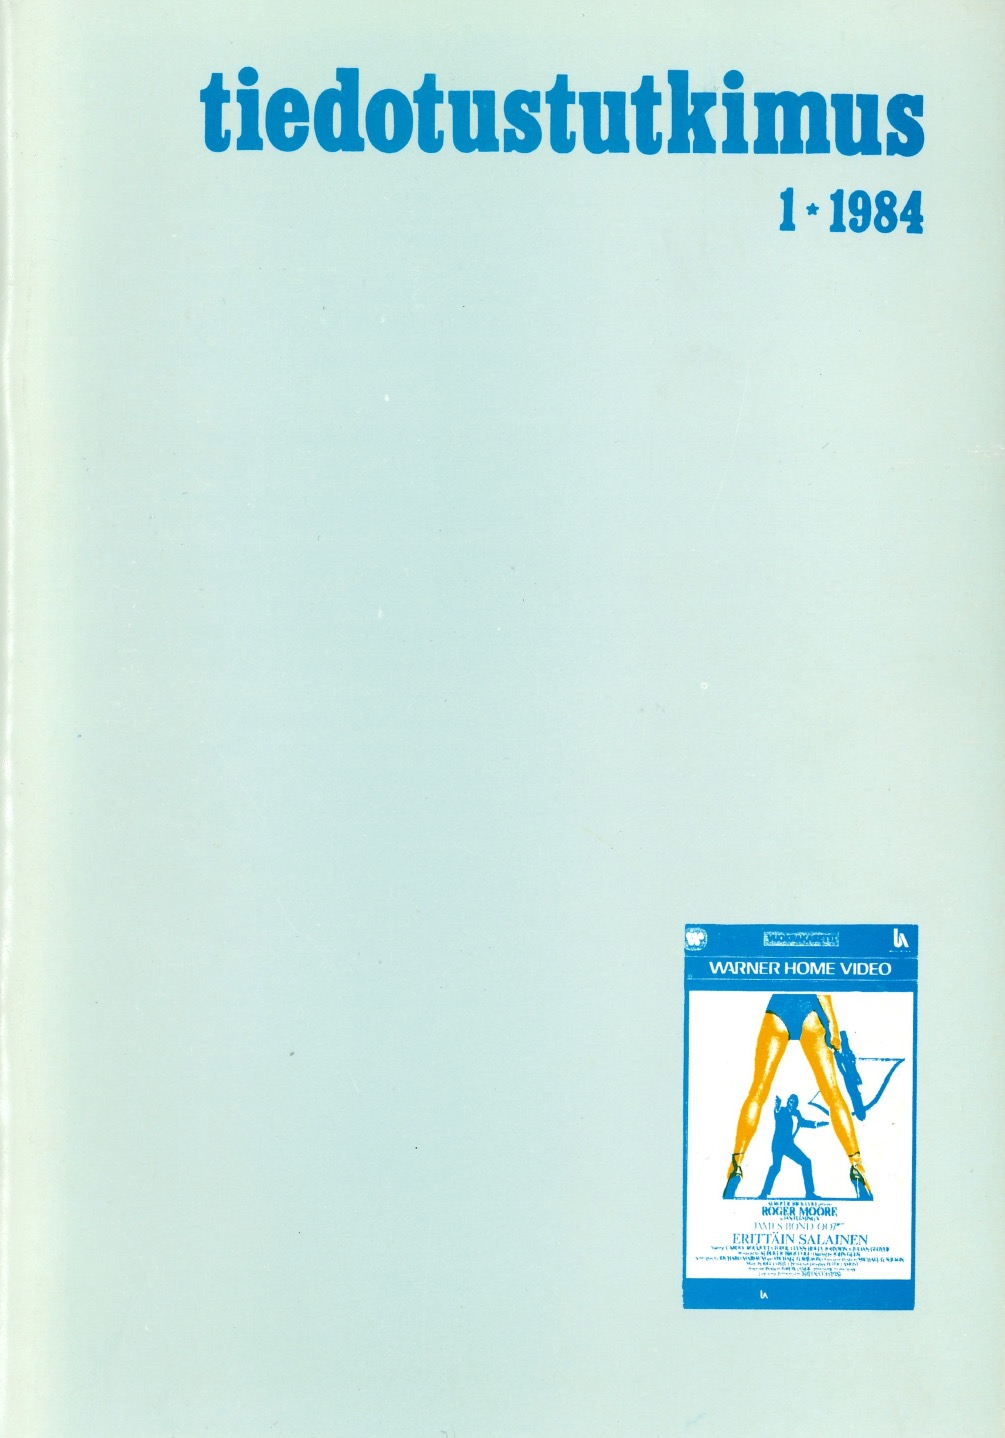 					Näytä Vol 7 Nro 1 (1984)
				